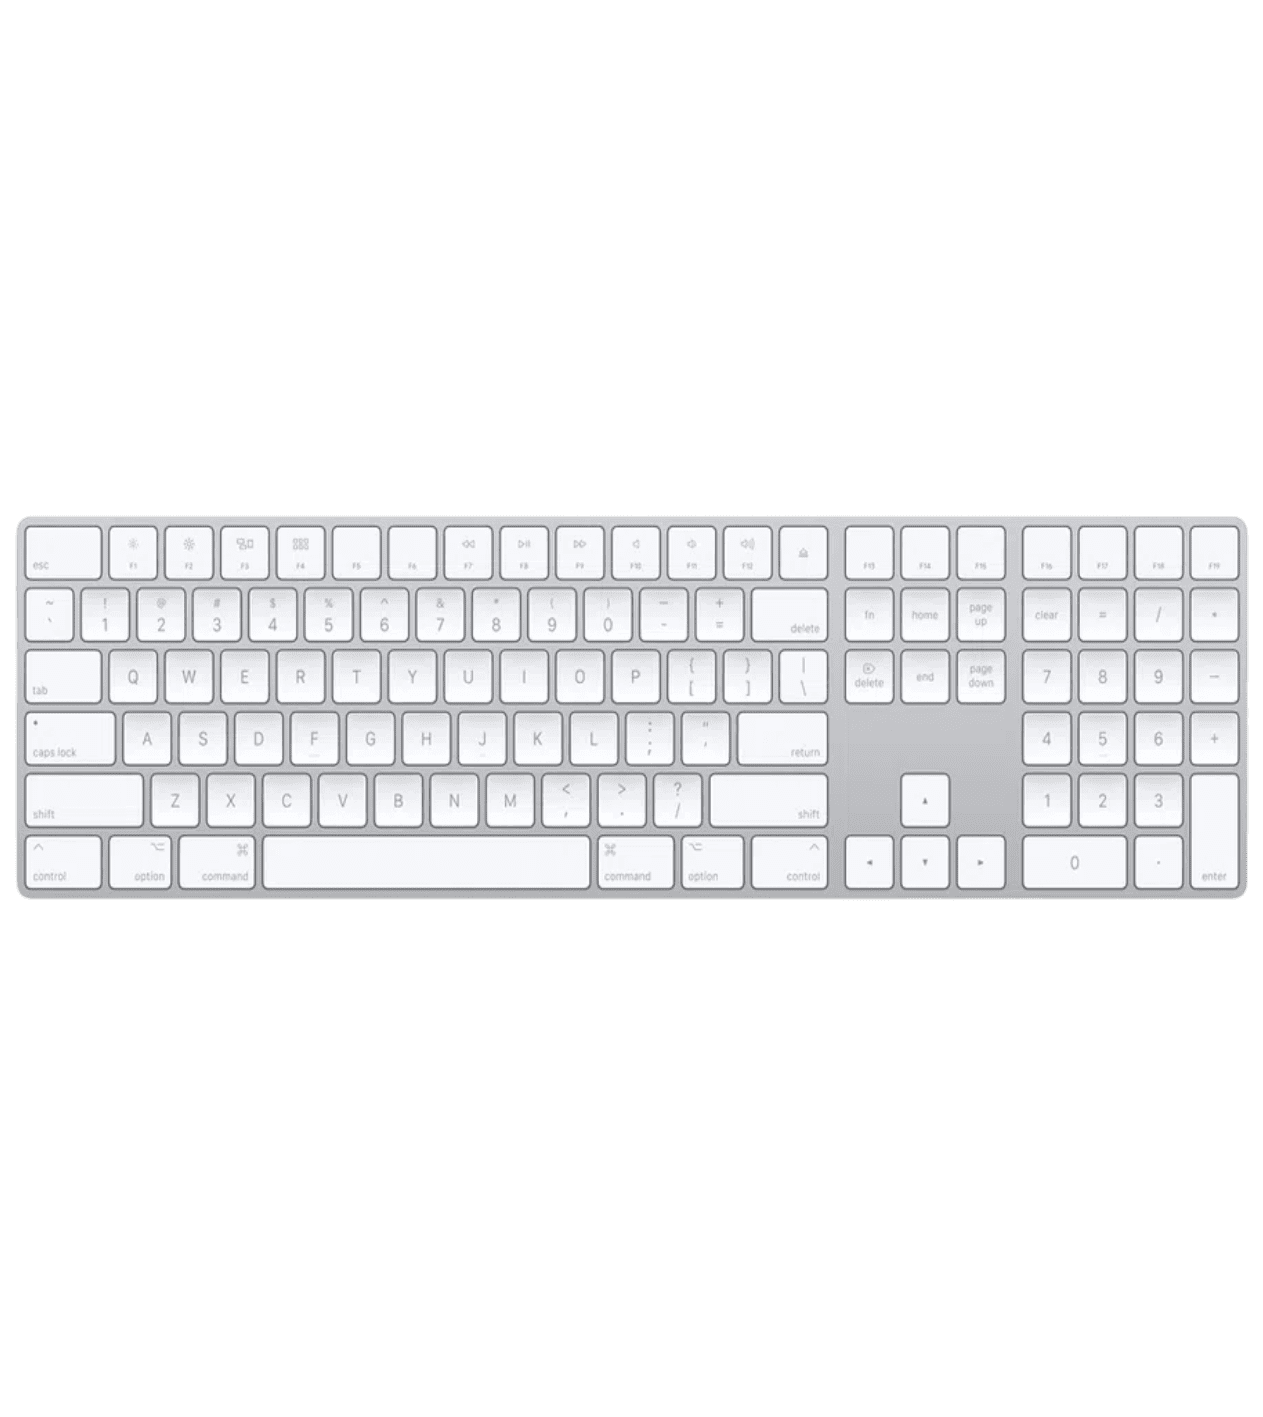 Клавиатура Apple Magic Keyboard with Numeric Keypad